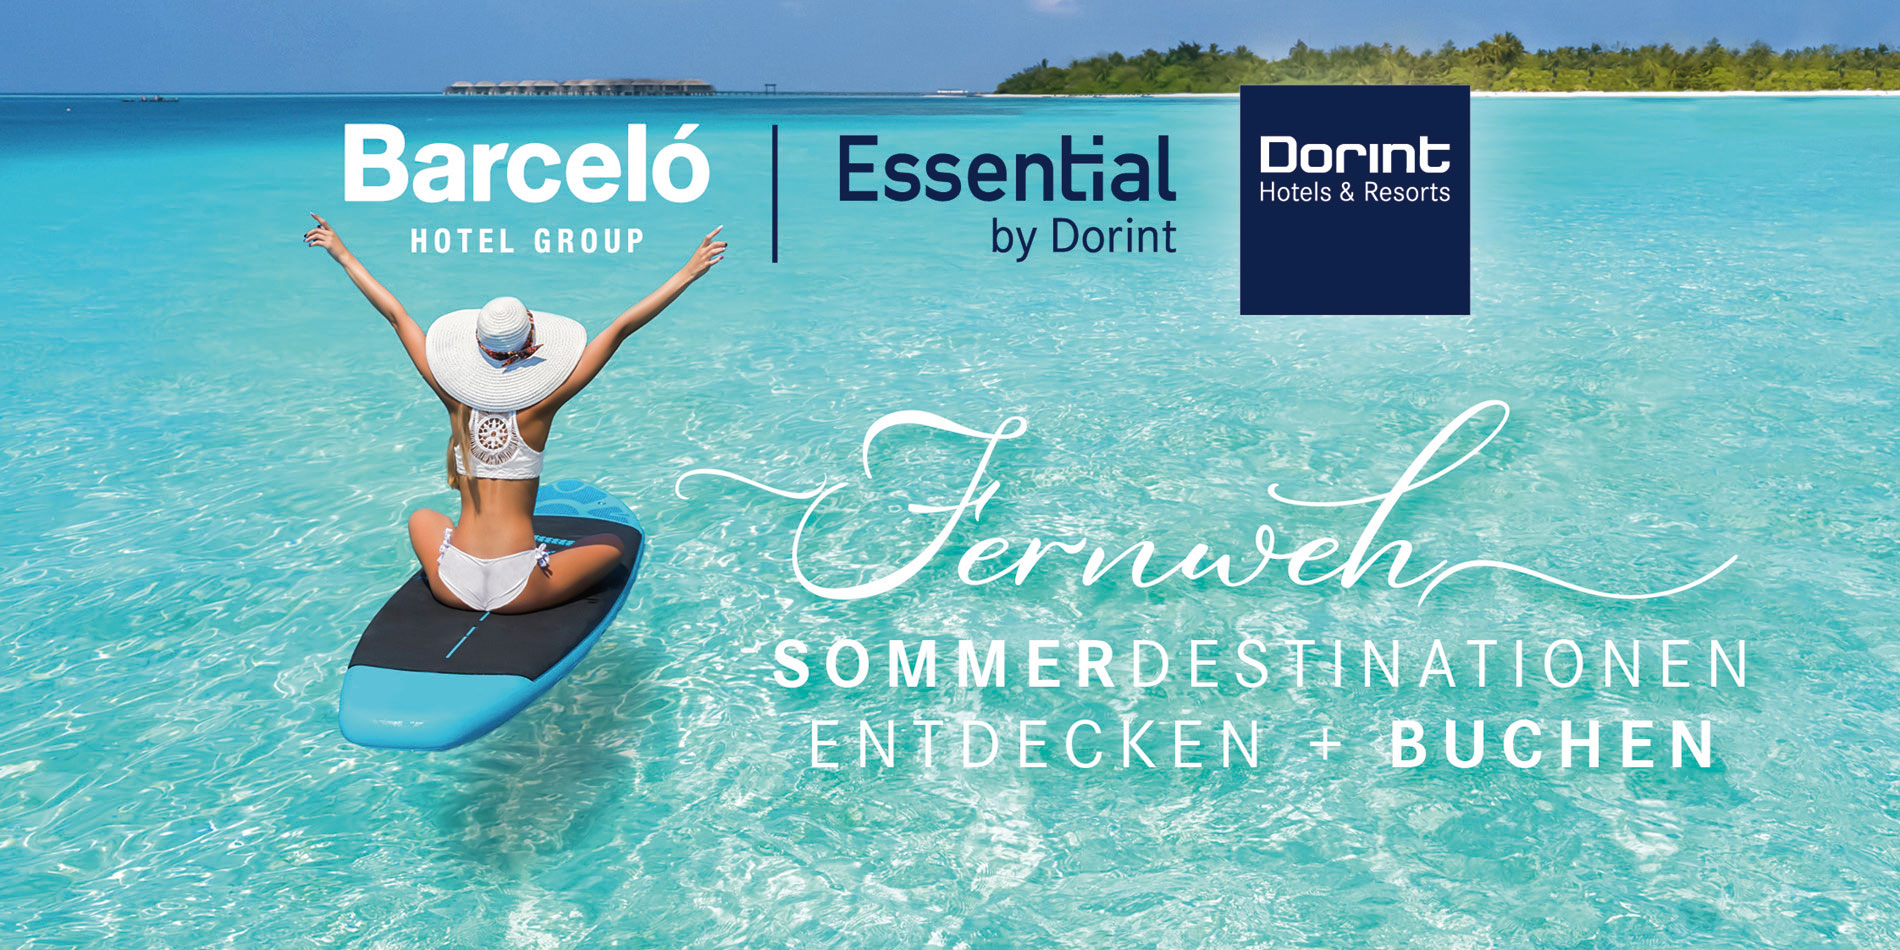 Barcelo Hotel Group und Dorint Hotelgruppe - wir sind Partner